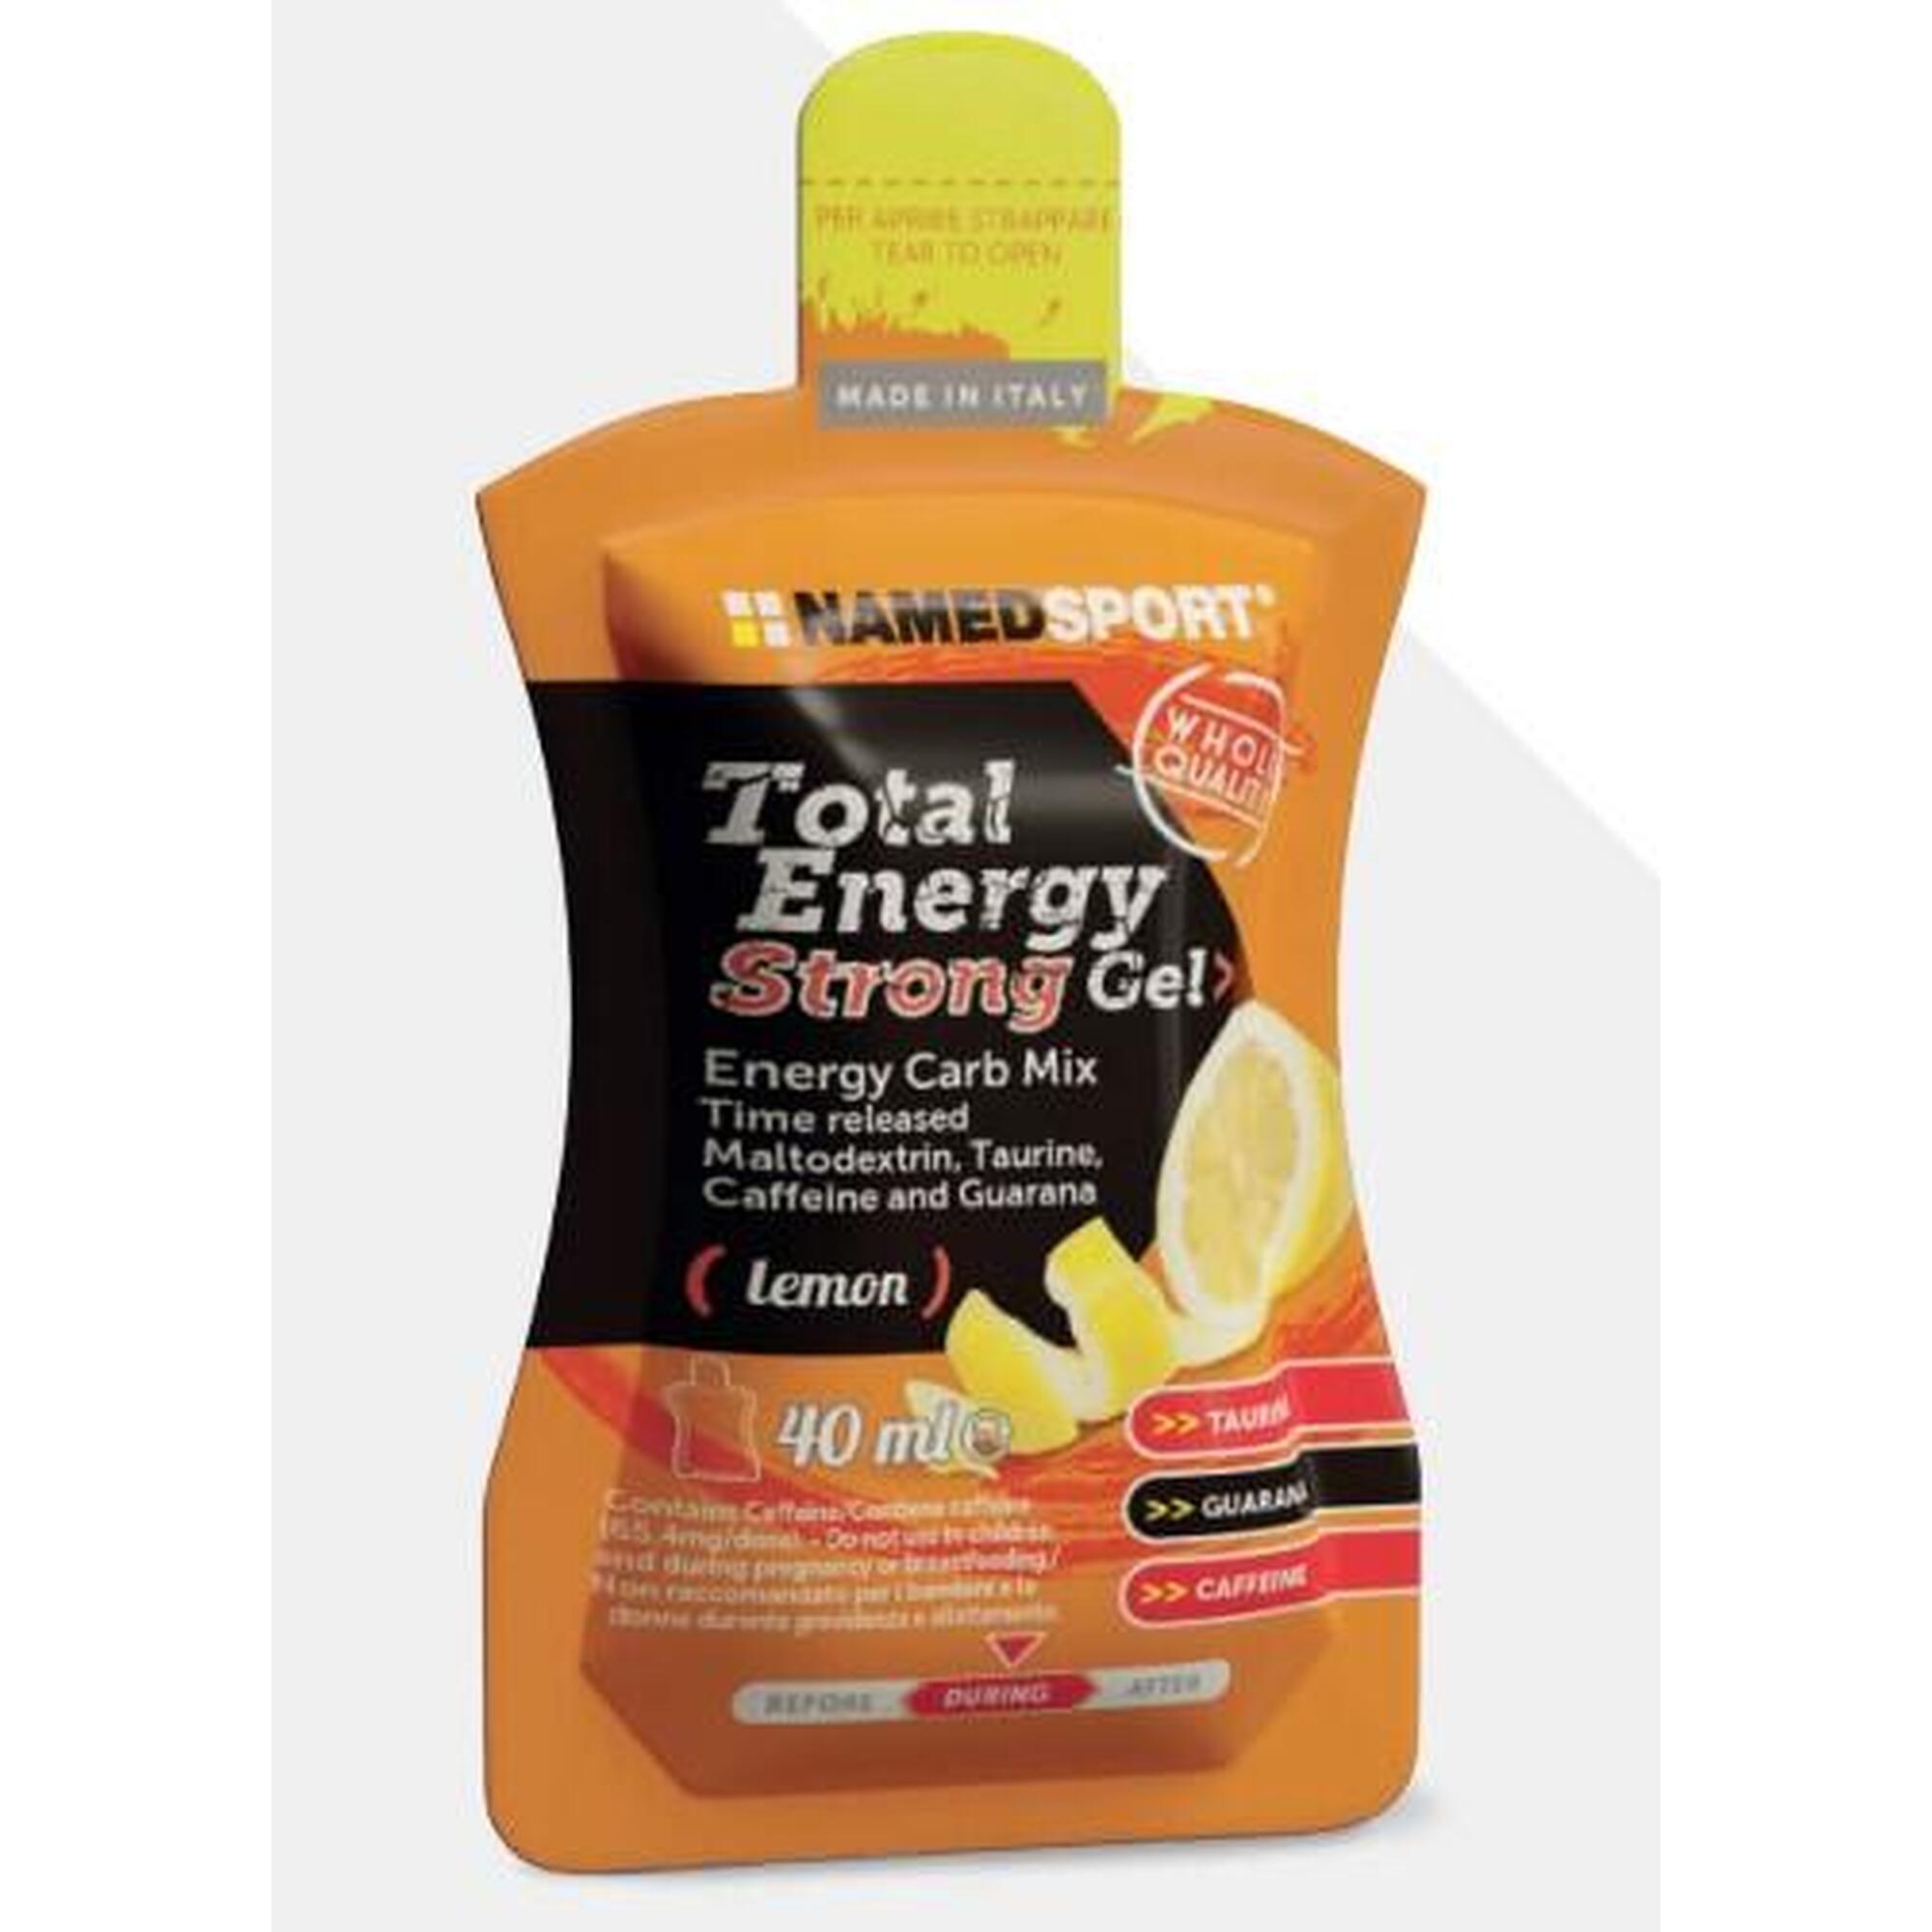 Total Energy Strong Gel 40g - Lemon